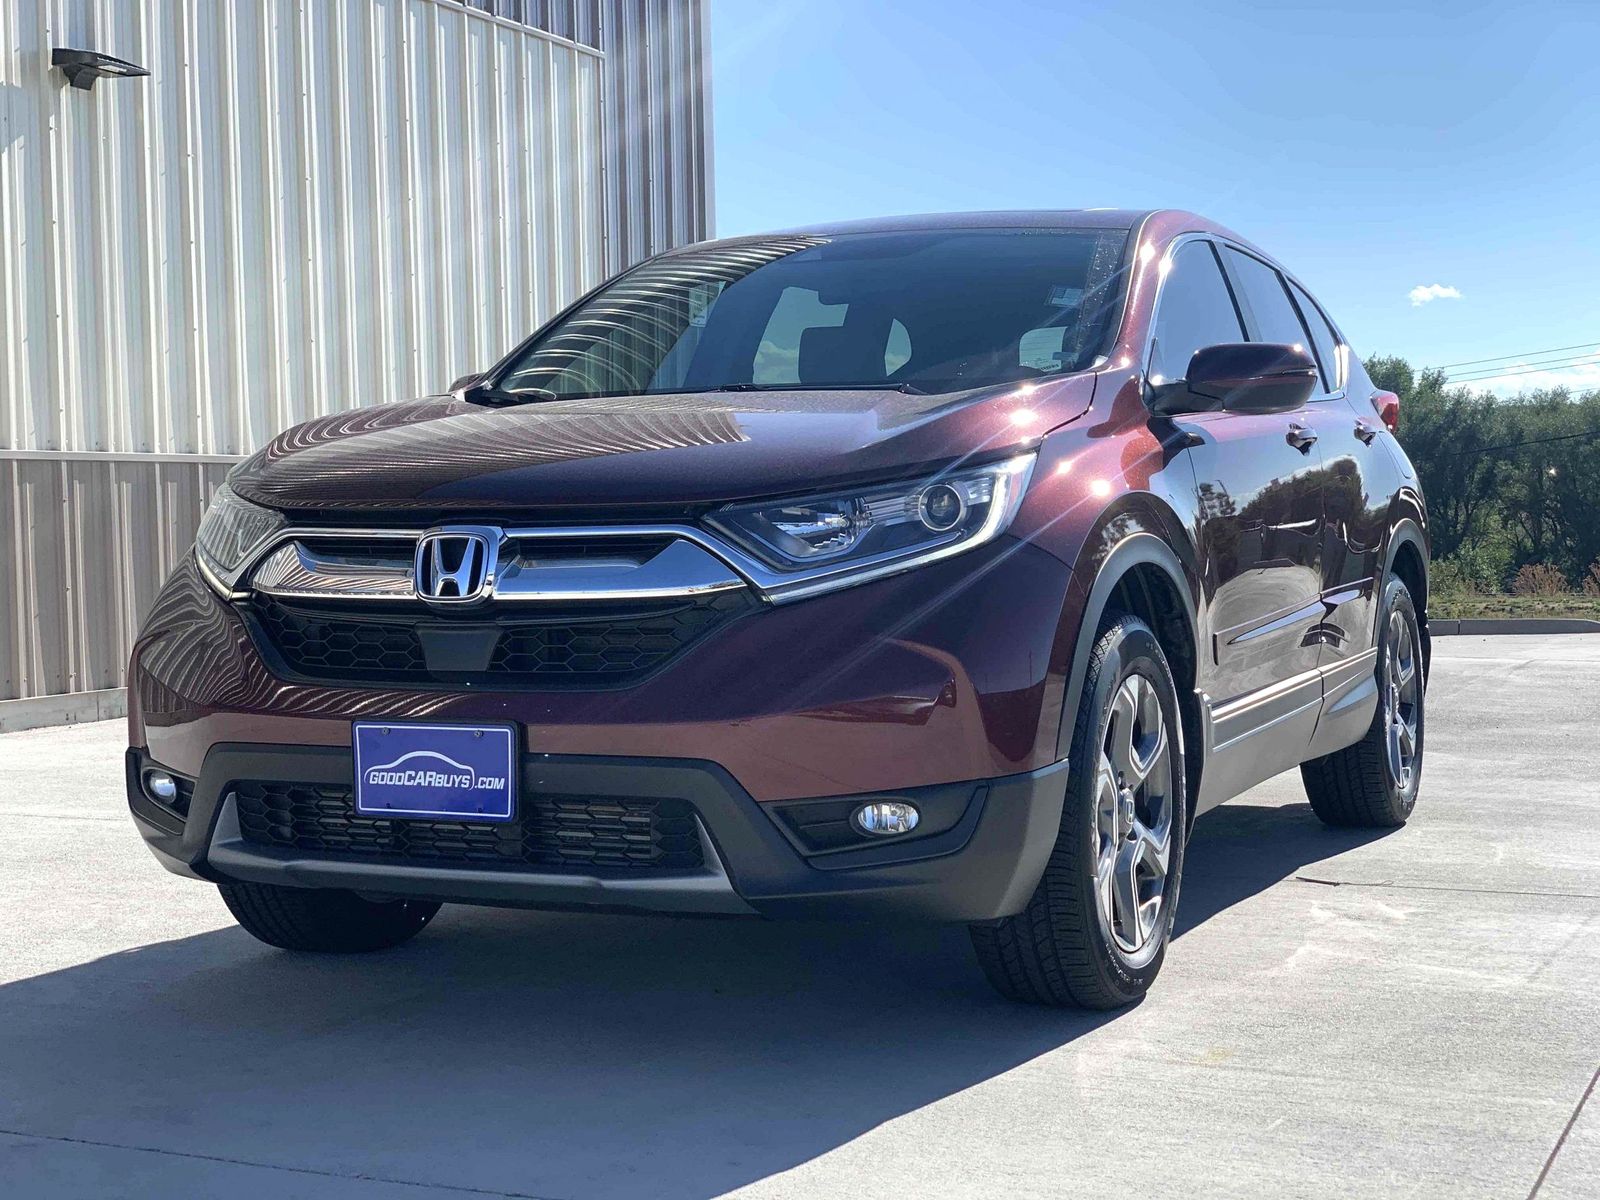 2. 2019 Honda CR-V EX-L for sale on Craigslist - wide 8